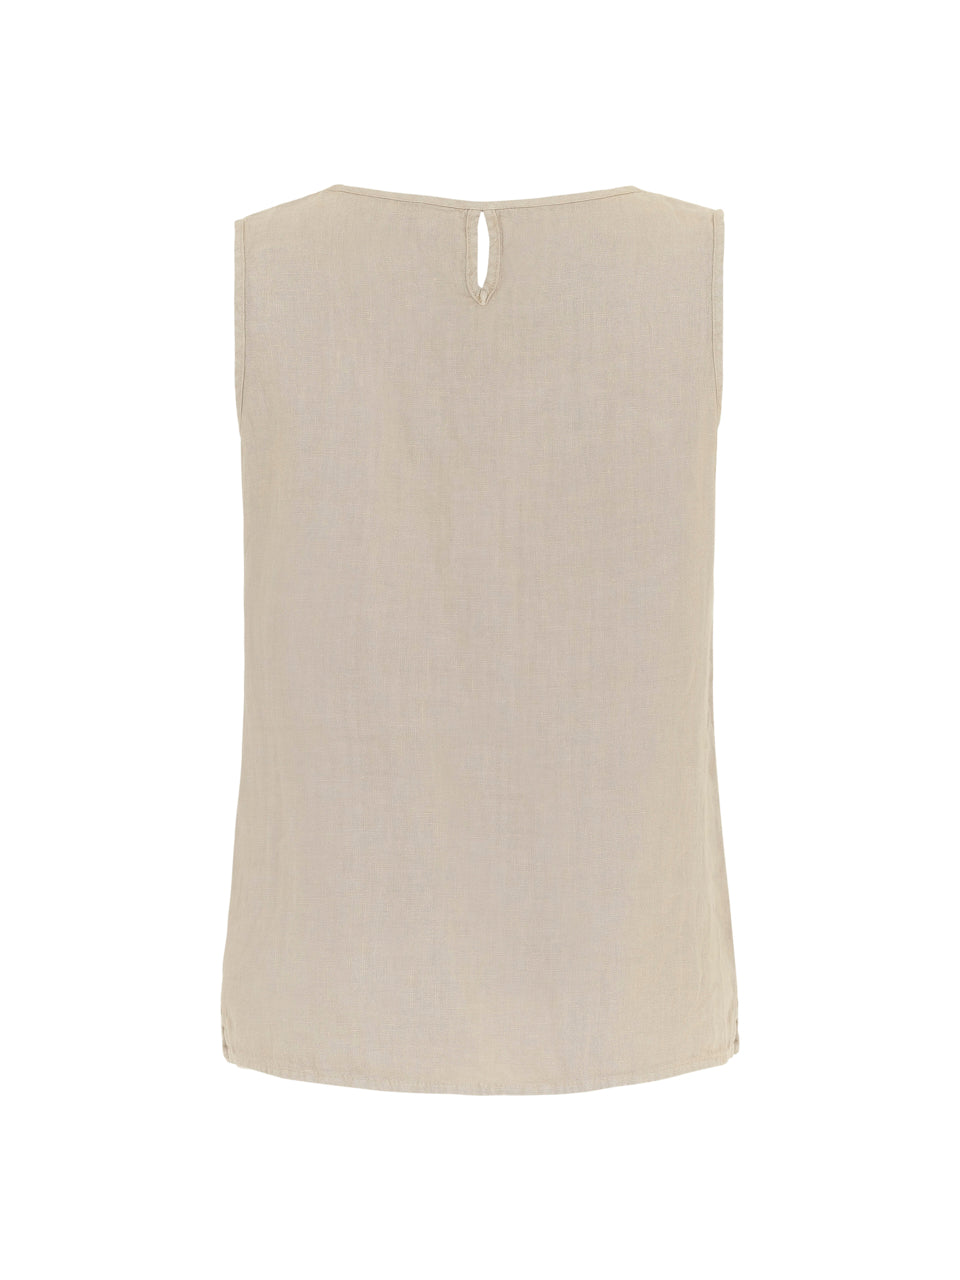 Dolcezza linen vest in beige
Product code 24250